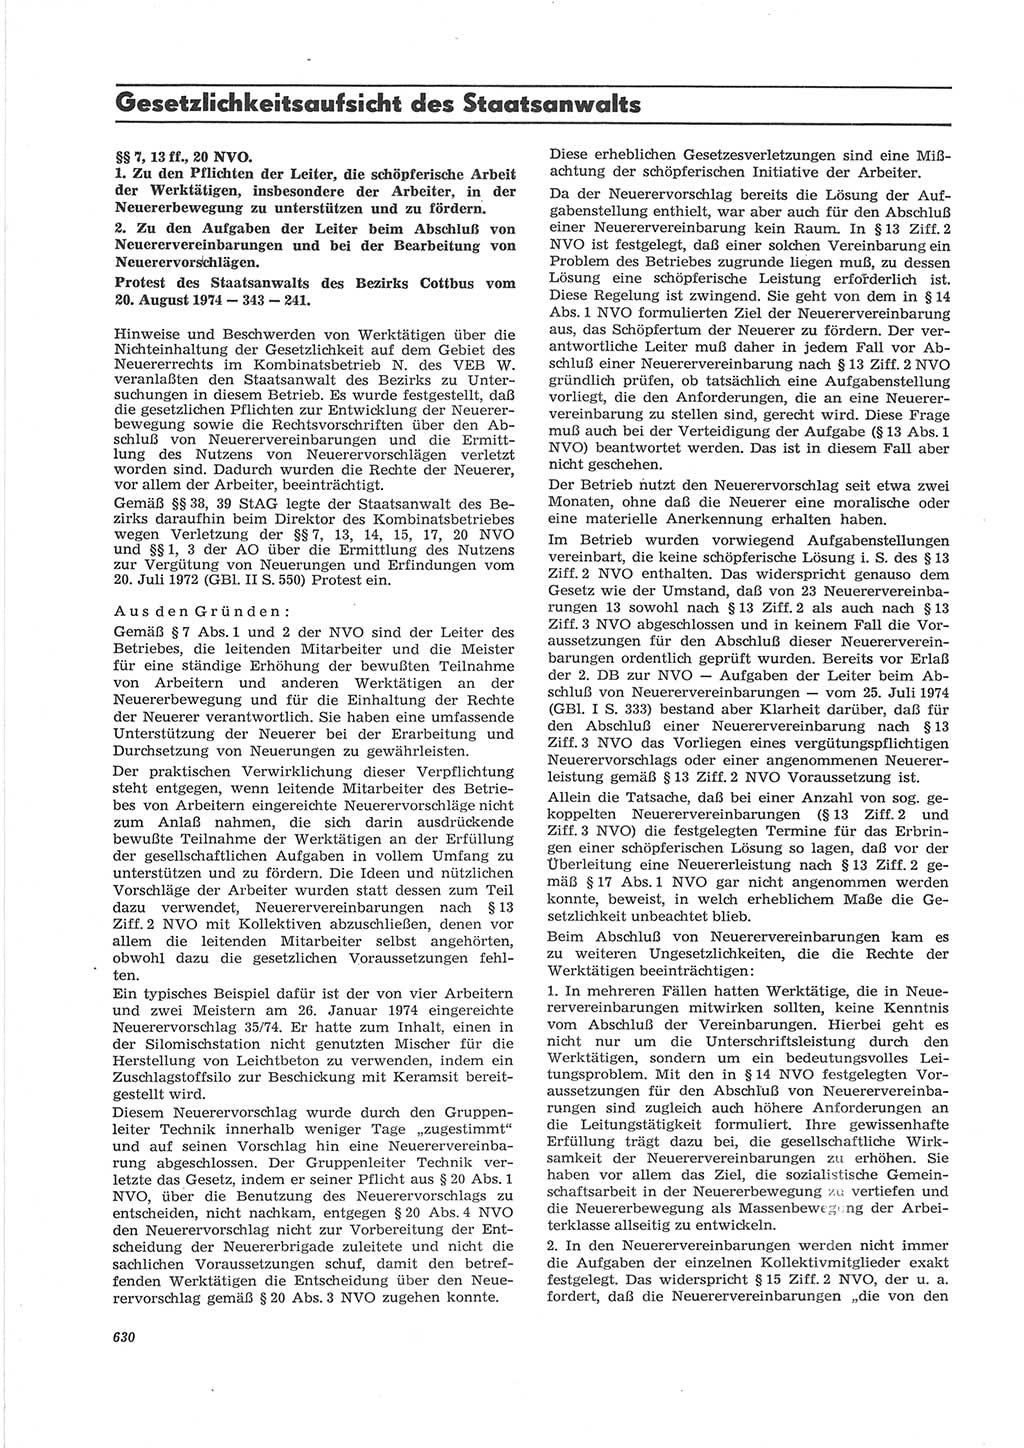 Neue Justiz (NJ), Zeitschrift für Recht und Rechtswissenschaft [Deutsche Demokratische Republik (DDR)], 28. Jahrgang 1974, Seite 630 (NJ DDR 1974, S. 630)